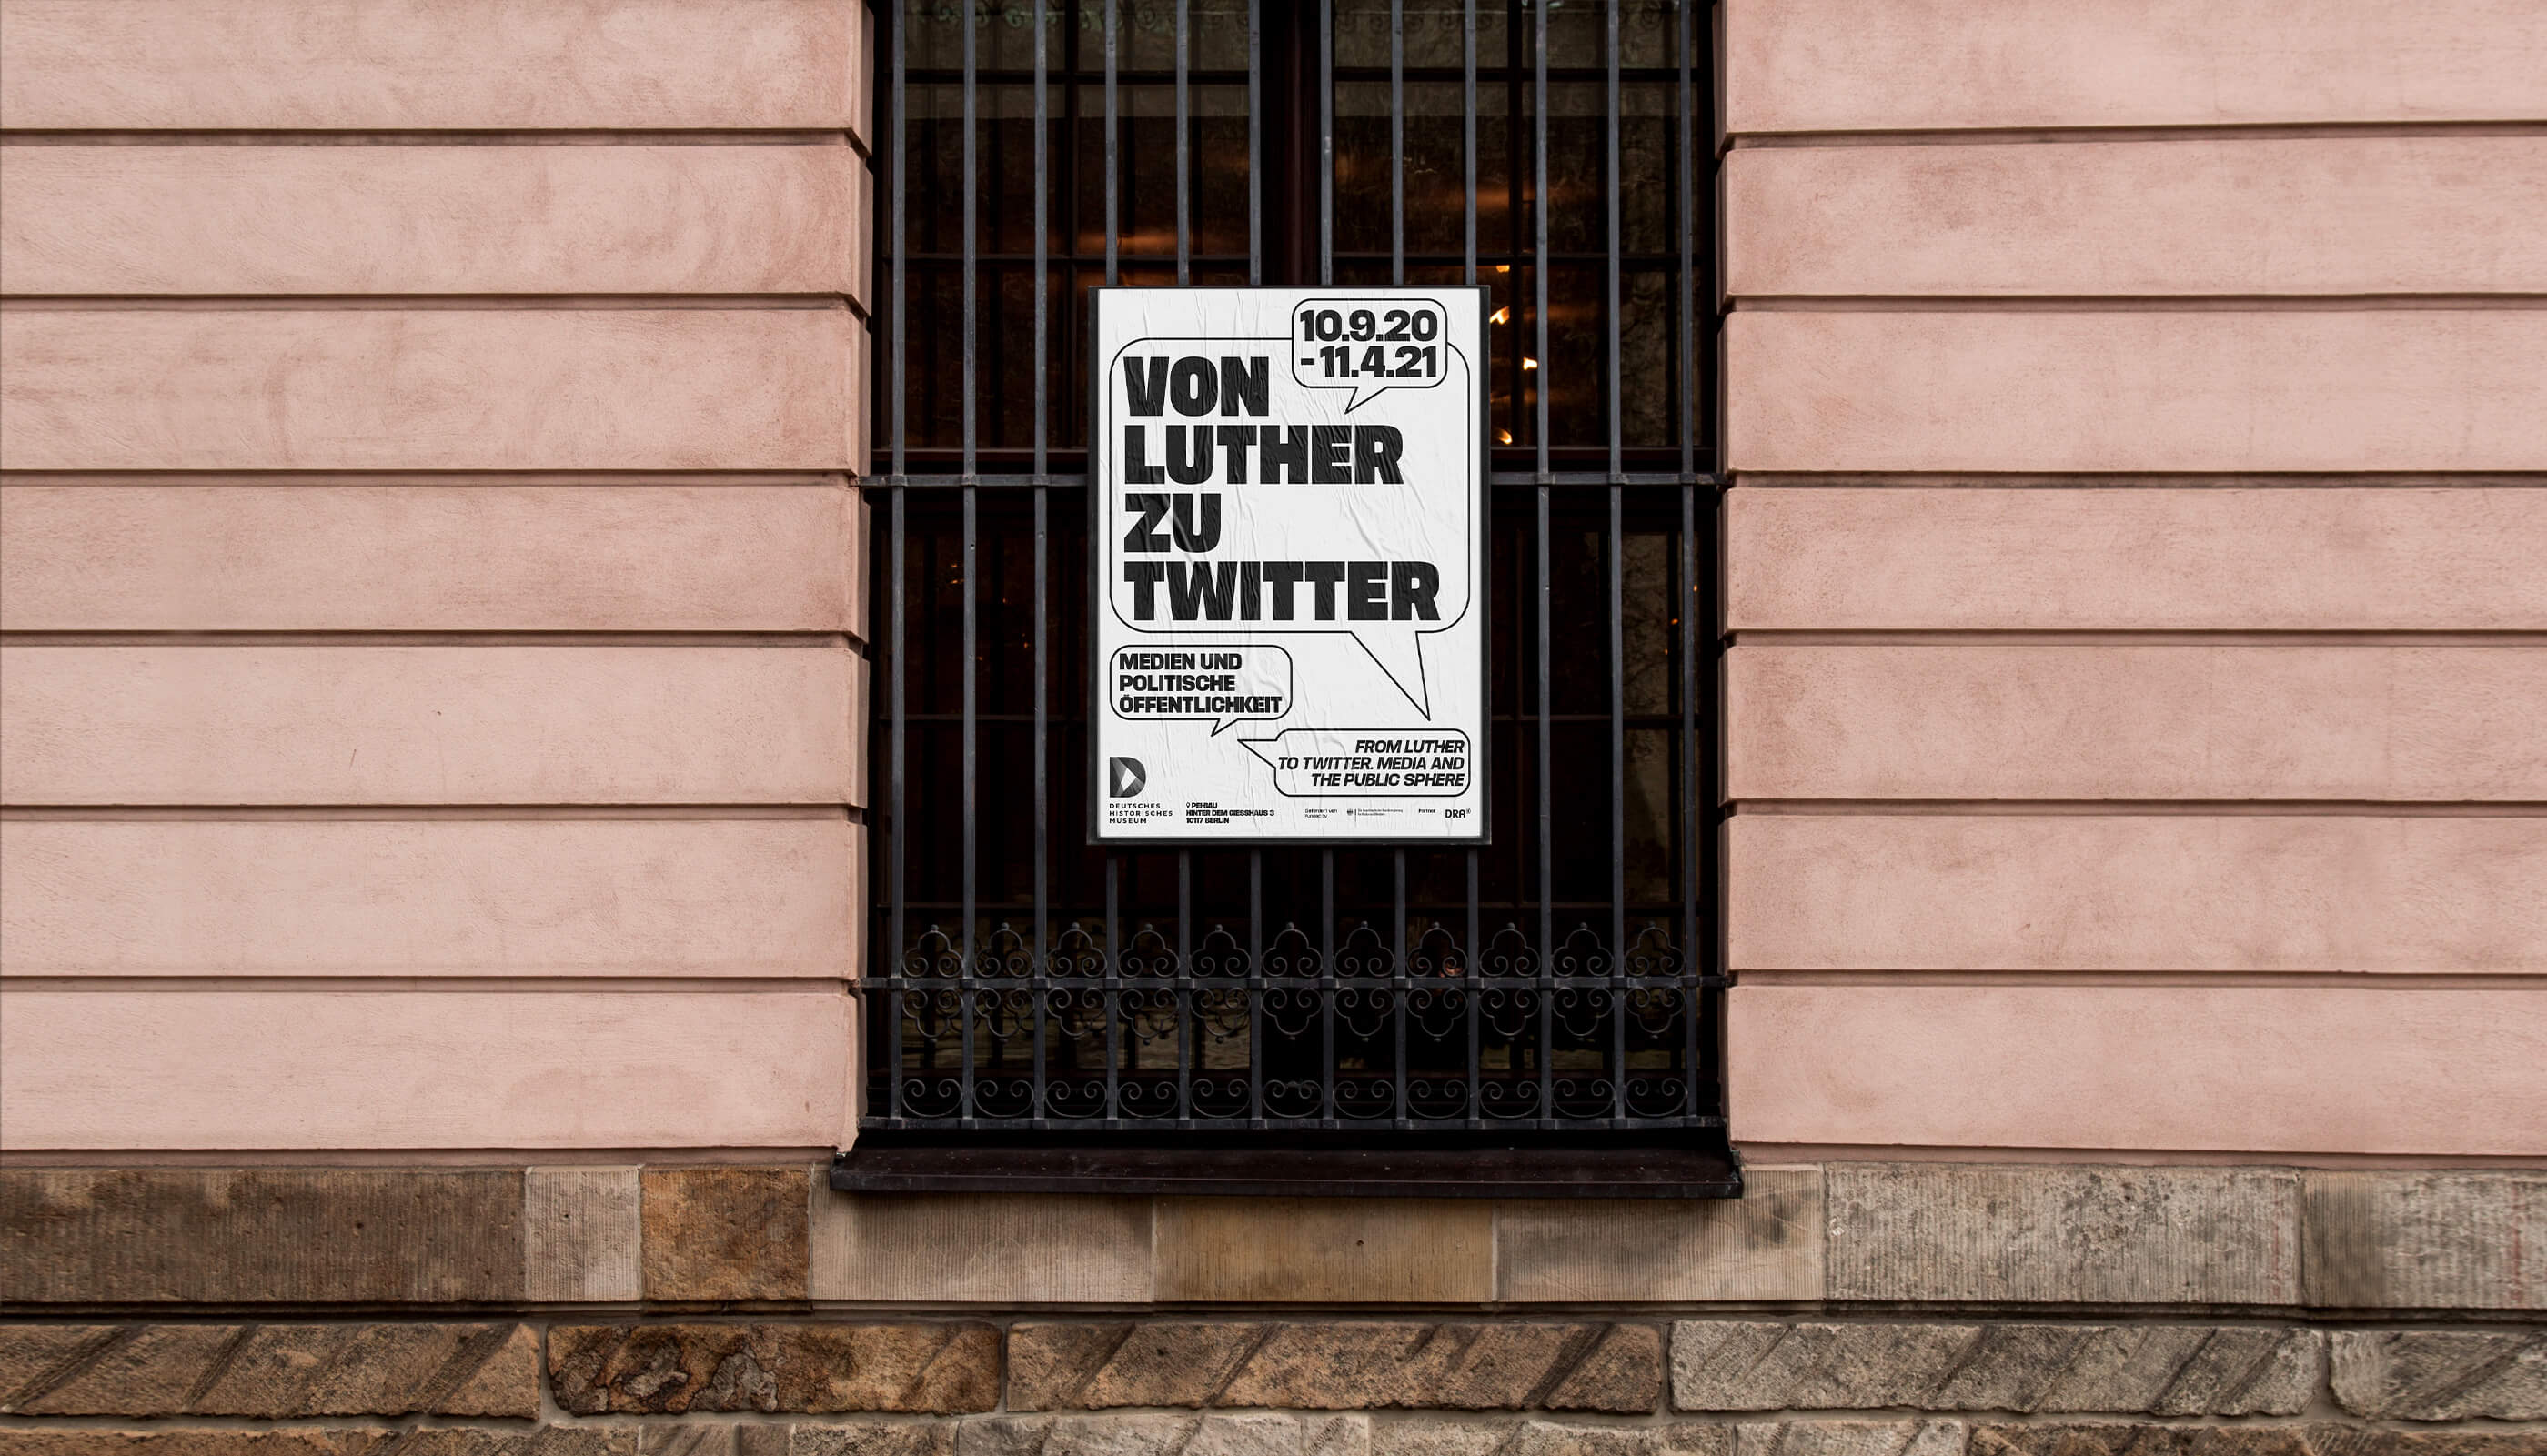 Deutsches Historisches Museum Berlin, Campaign, Kampagne, Exhibition, Ausstellung, Poster, Editorial, Publication, Printed Matter